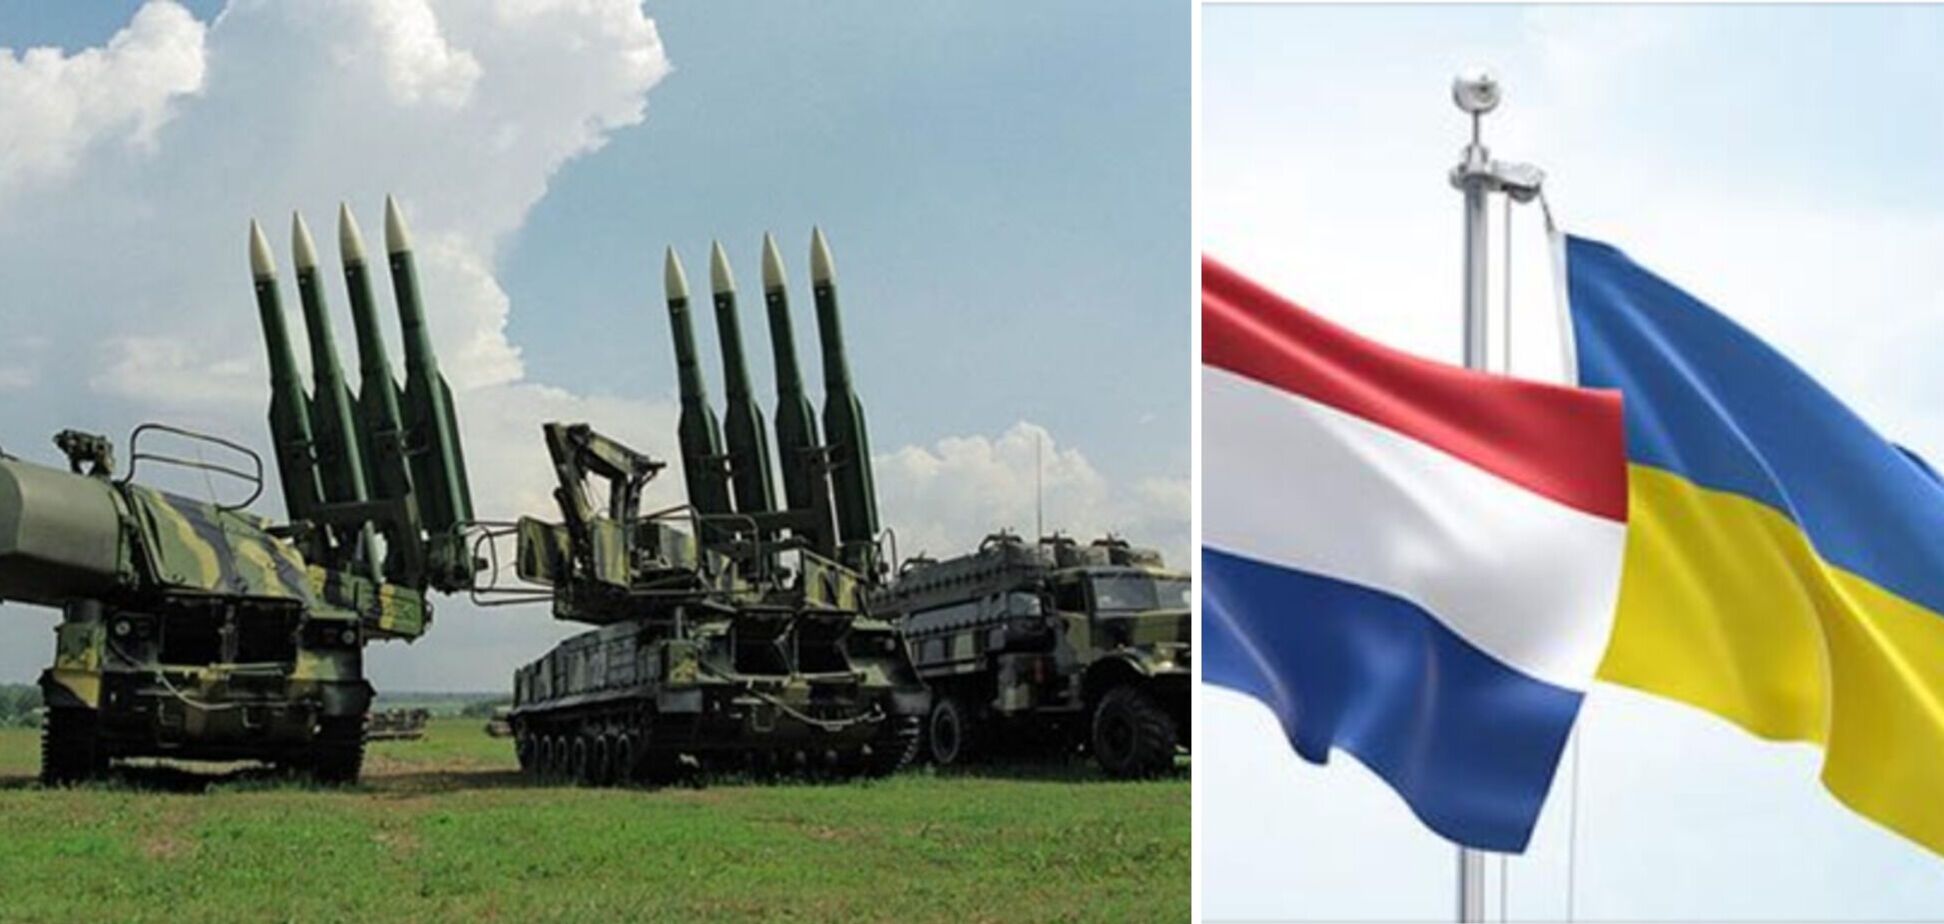 Нидерланды передадут Украине ракеты для ПВО и ПРО на €15 млн – минобороны